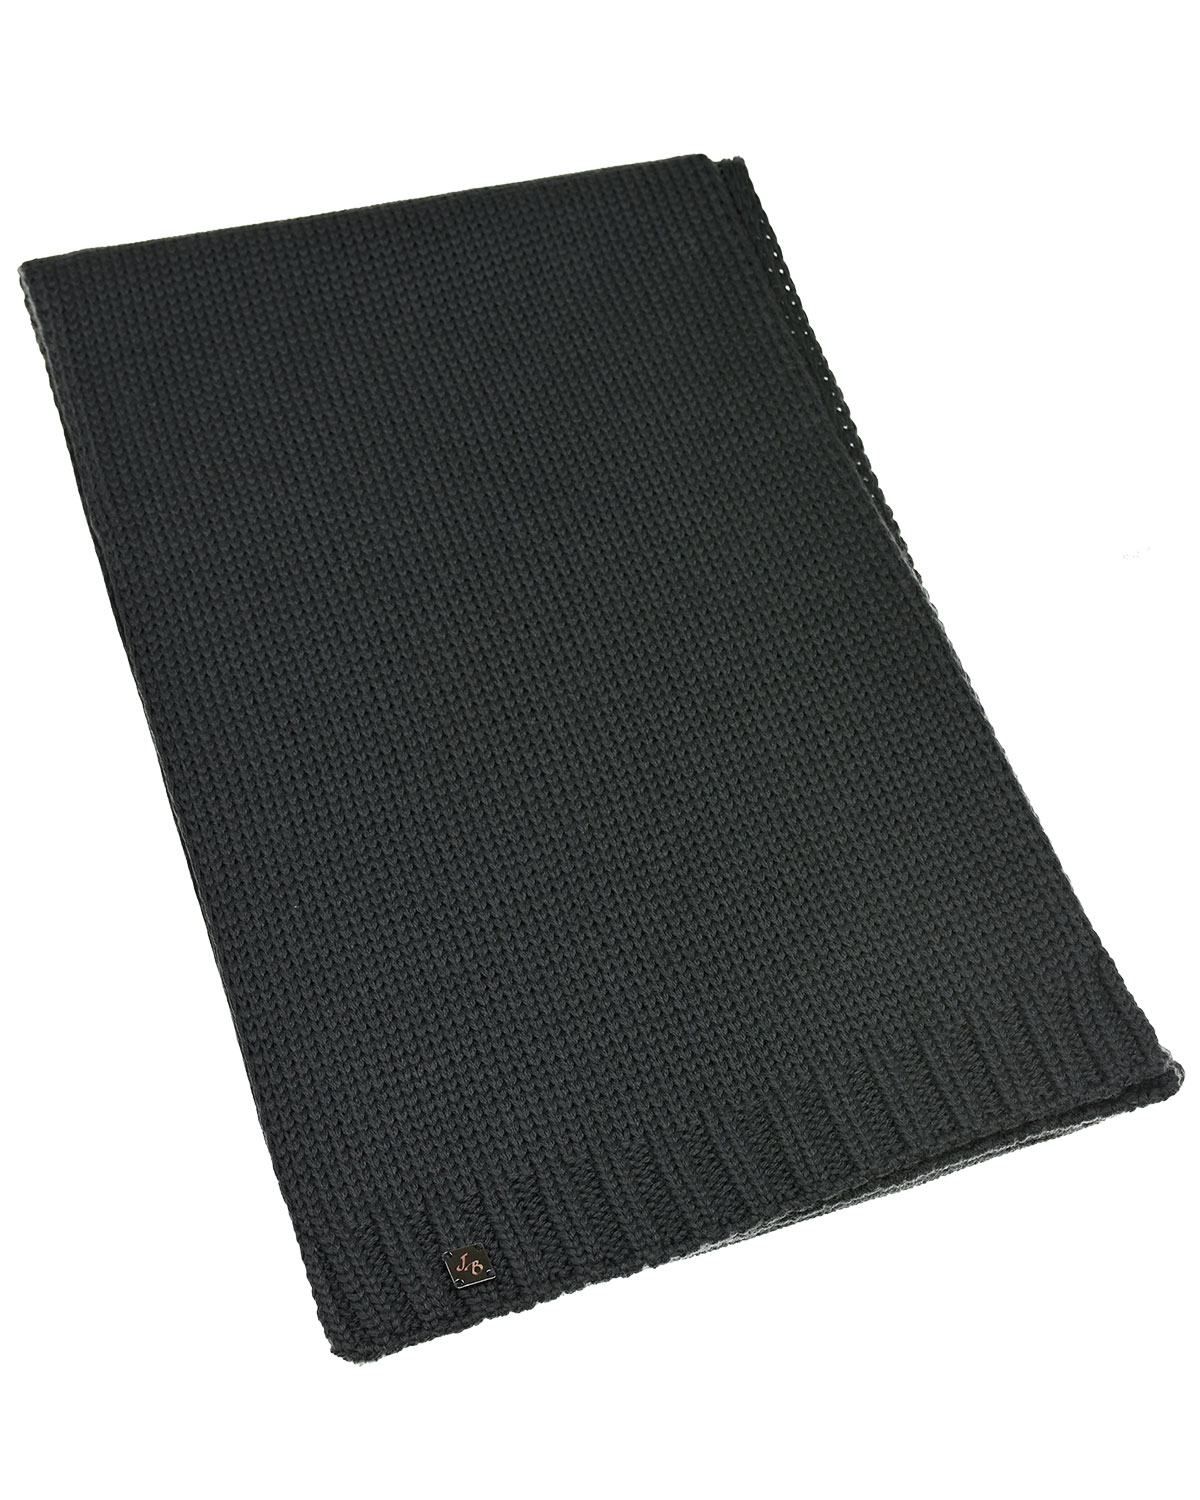 Темно-серый шарф 160х25 см Joli Bebe детское